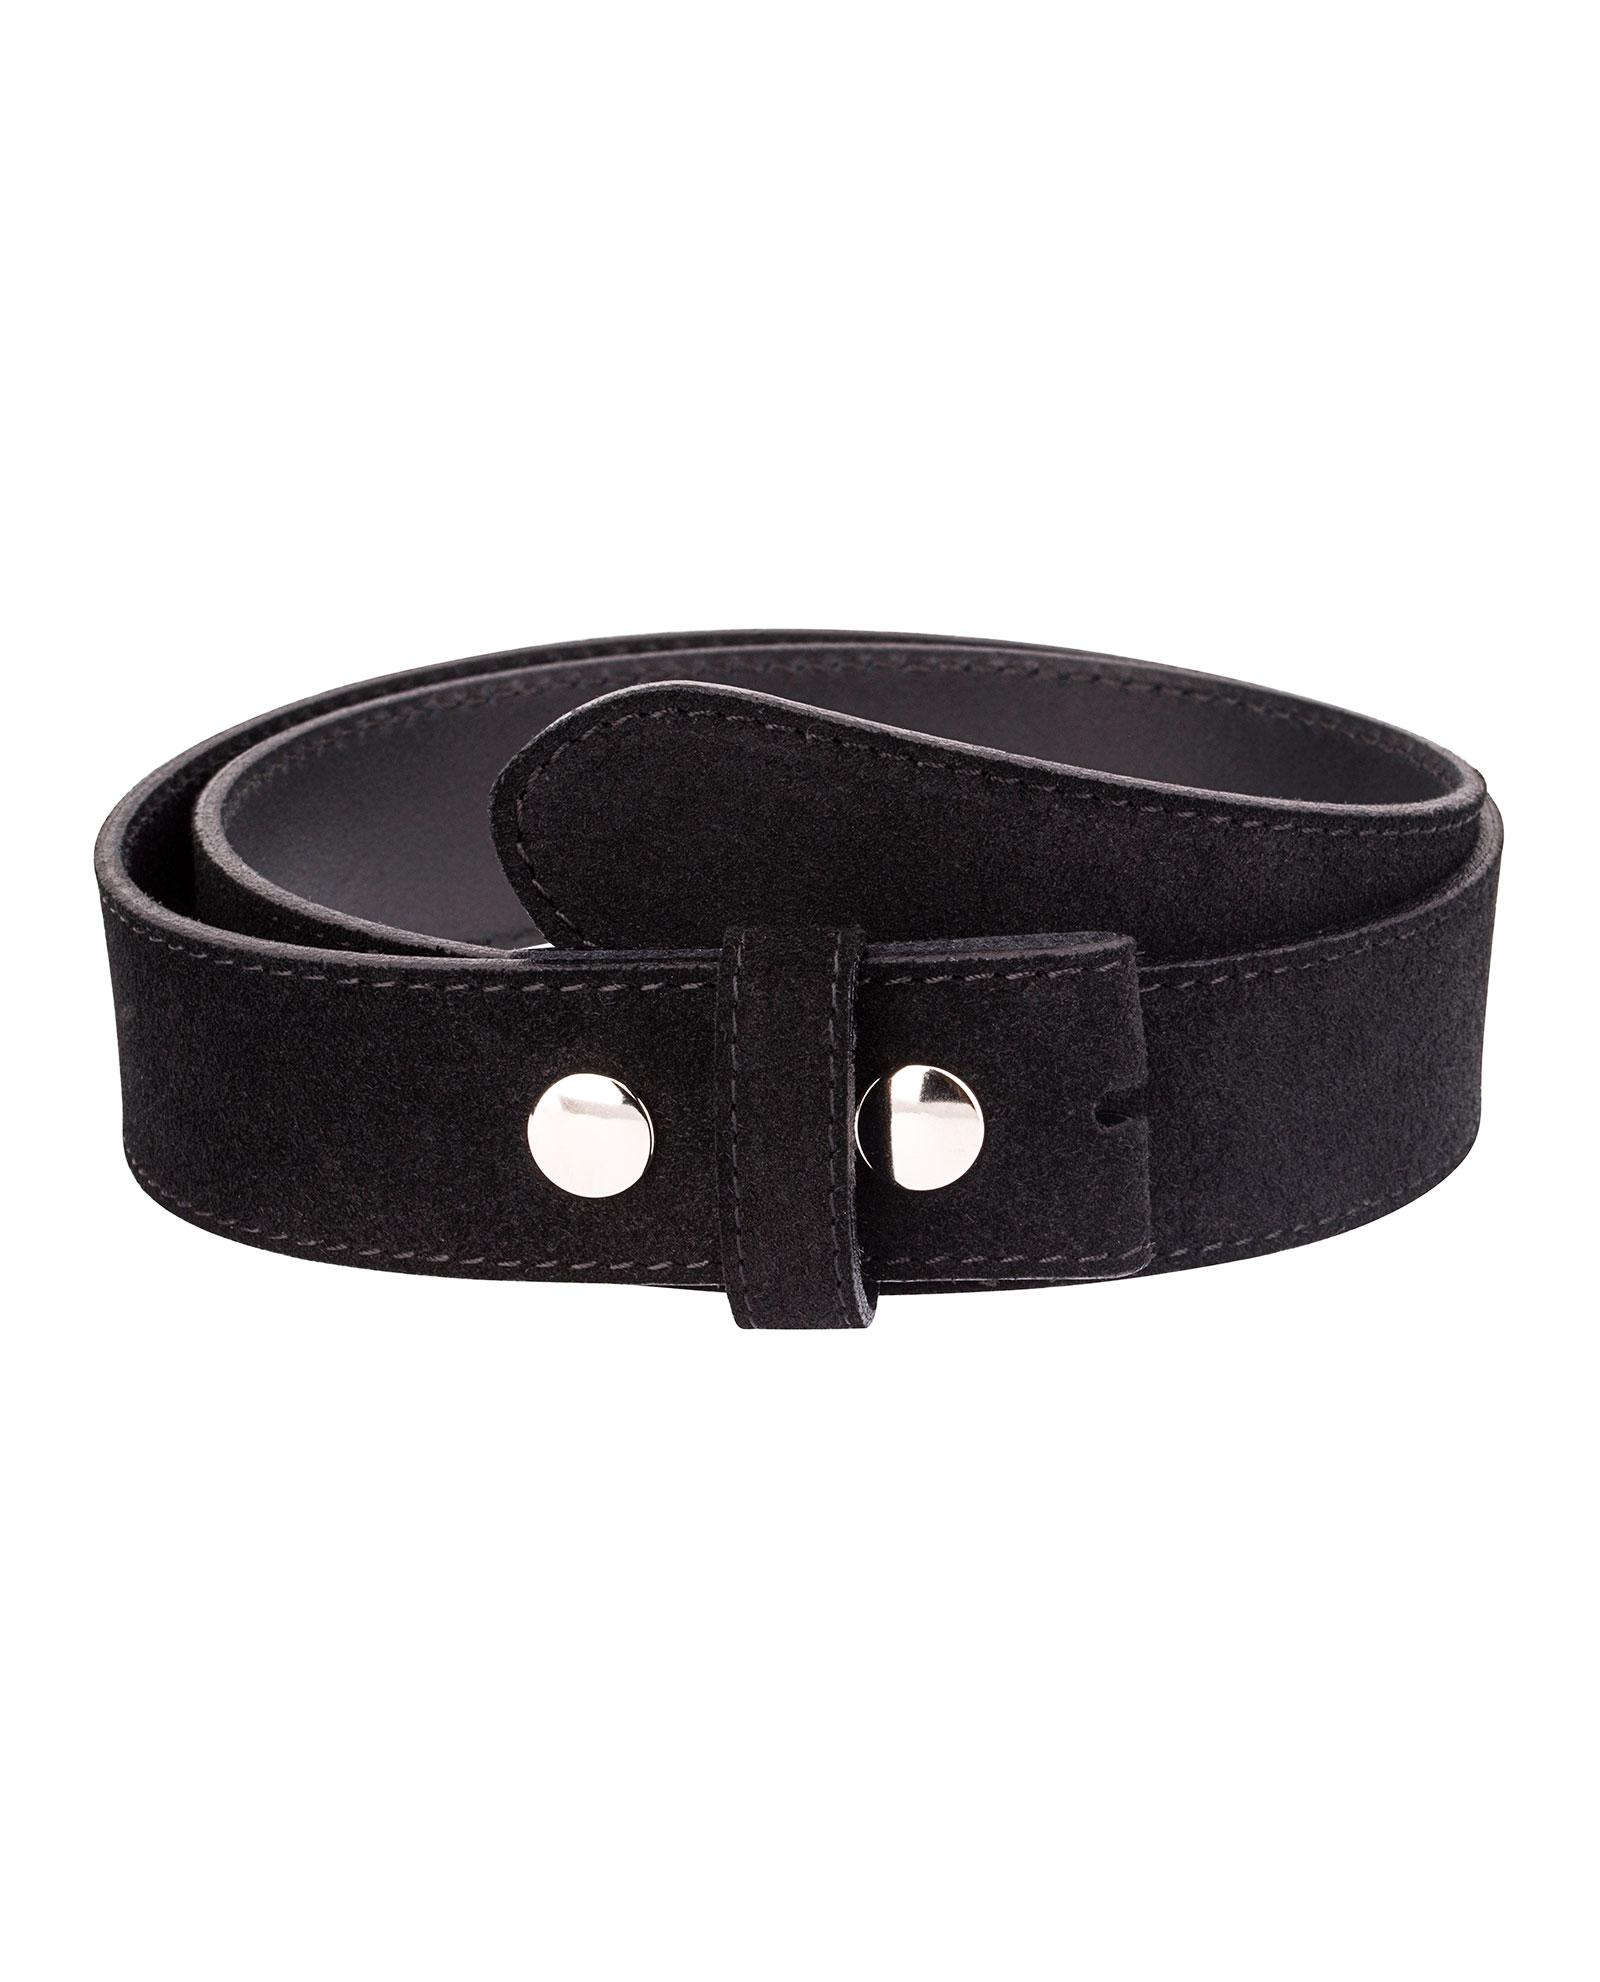 Buy Snap on Belt Strap - Black Suede Leather - LeatherBeltsOnline.com